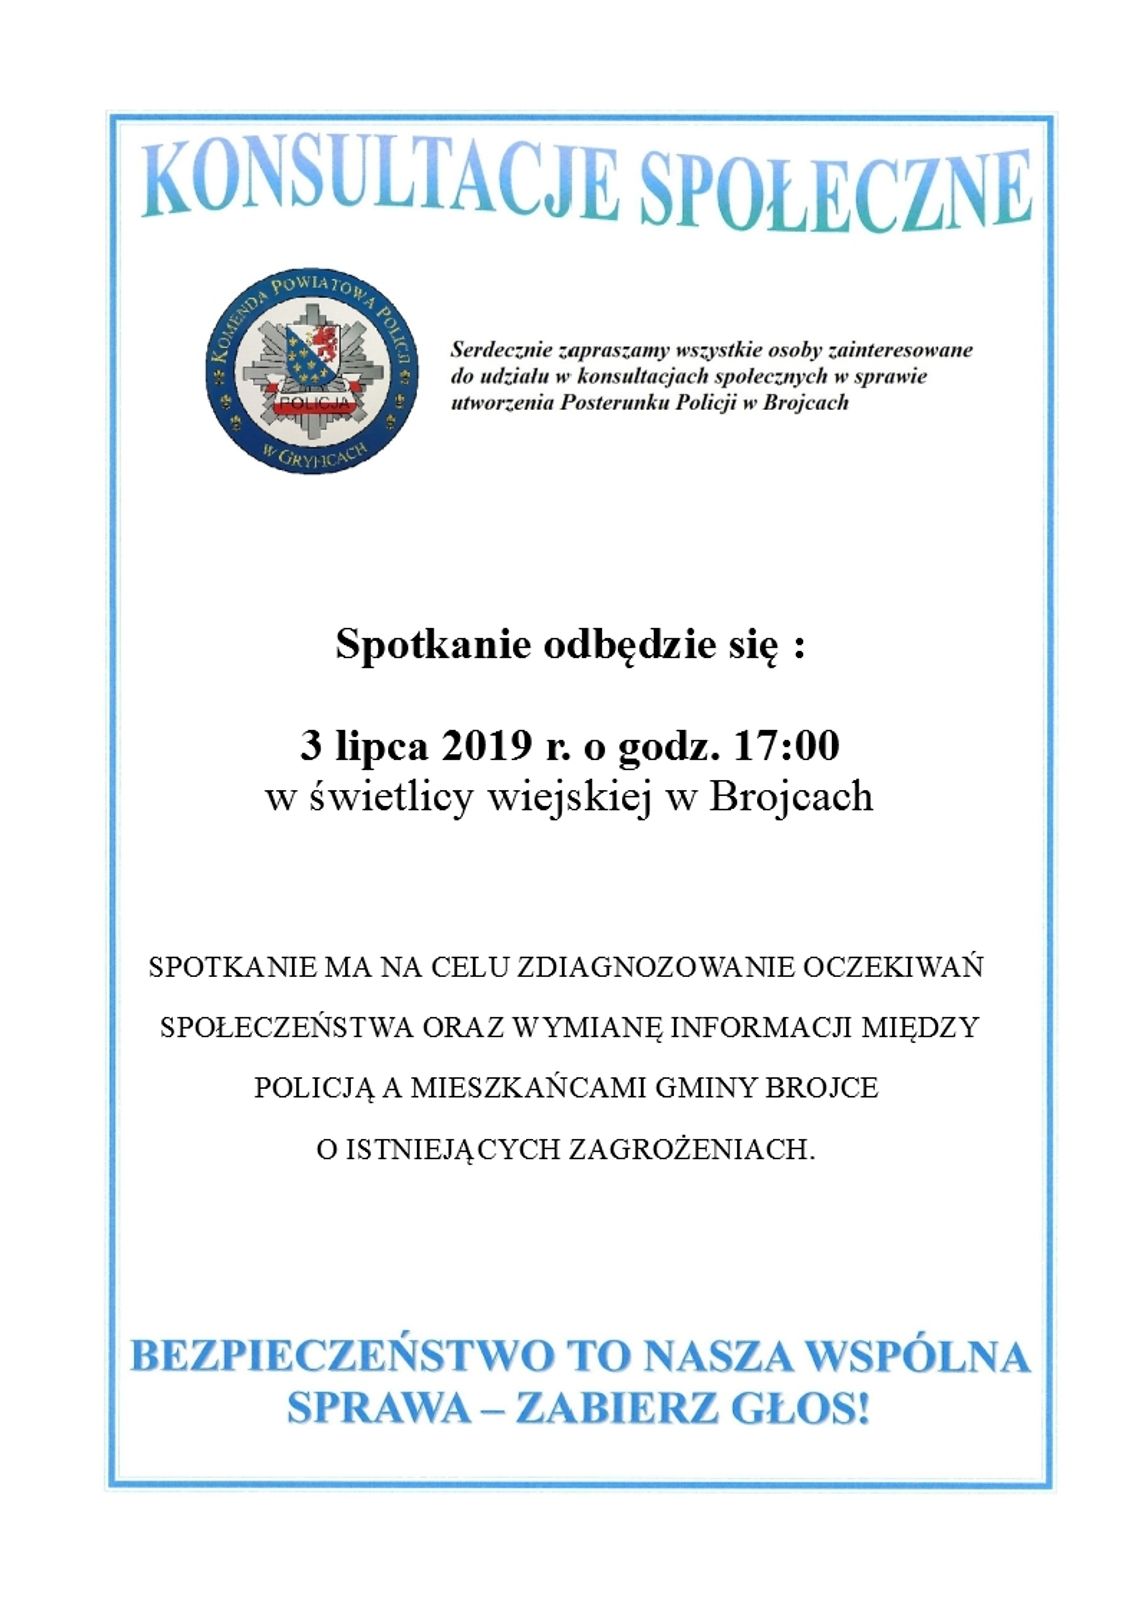 Zaproszenie na konsultacje społeczne ws. utworzenia Posterunku Policji w Brojcach